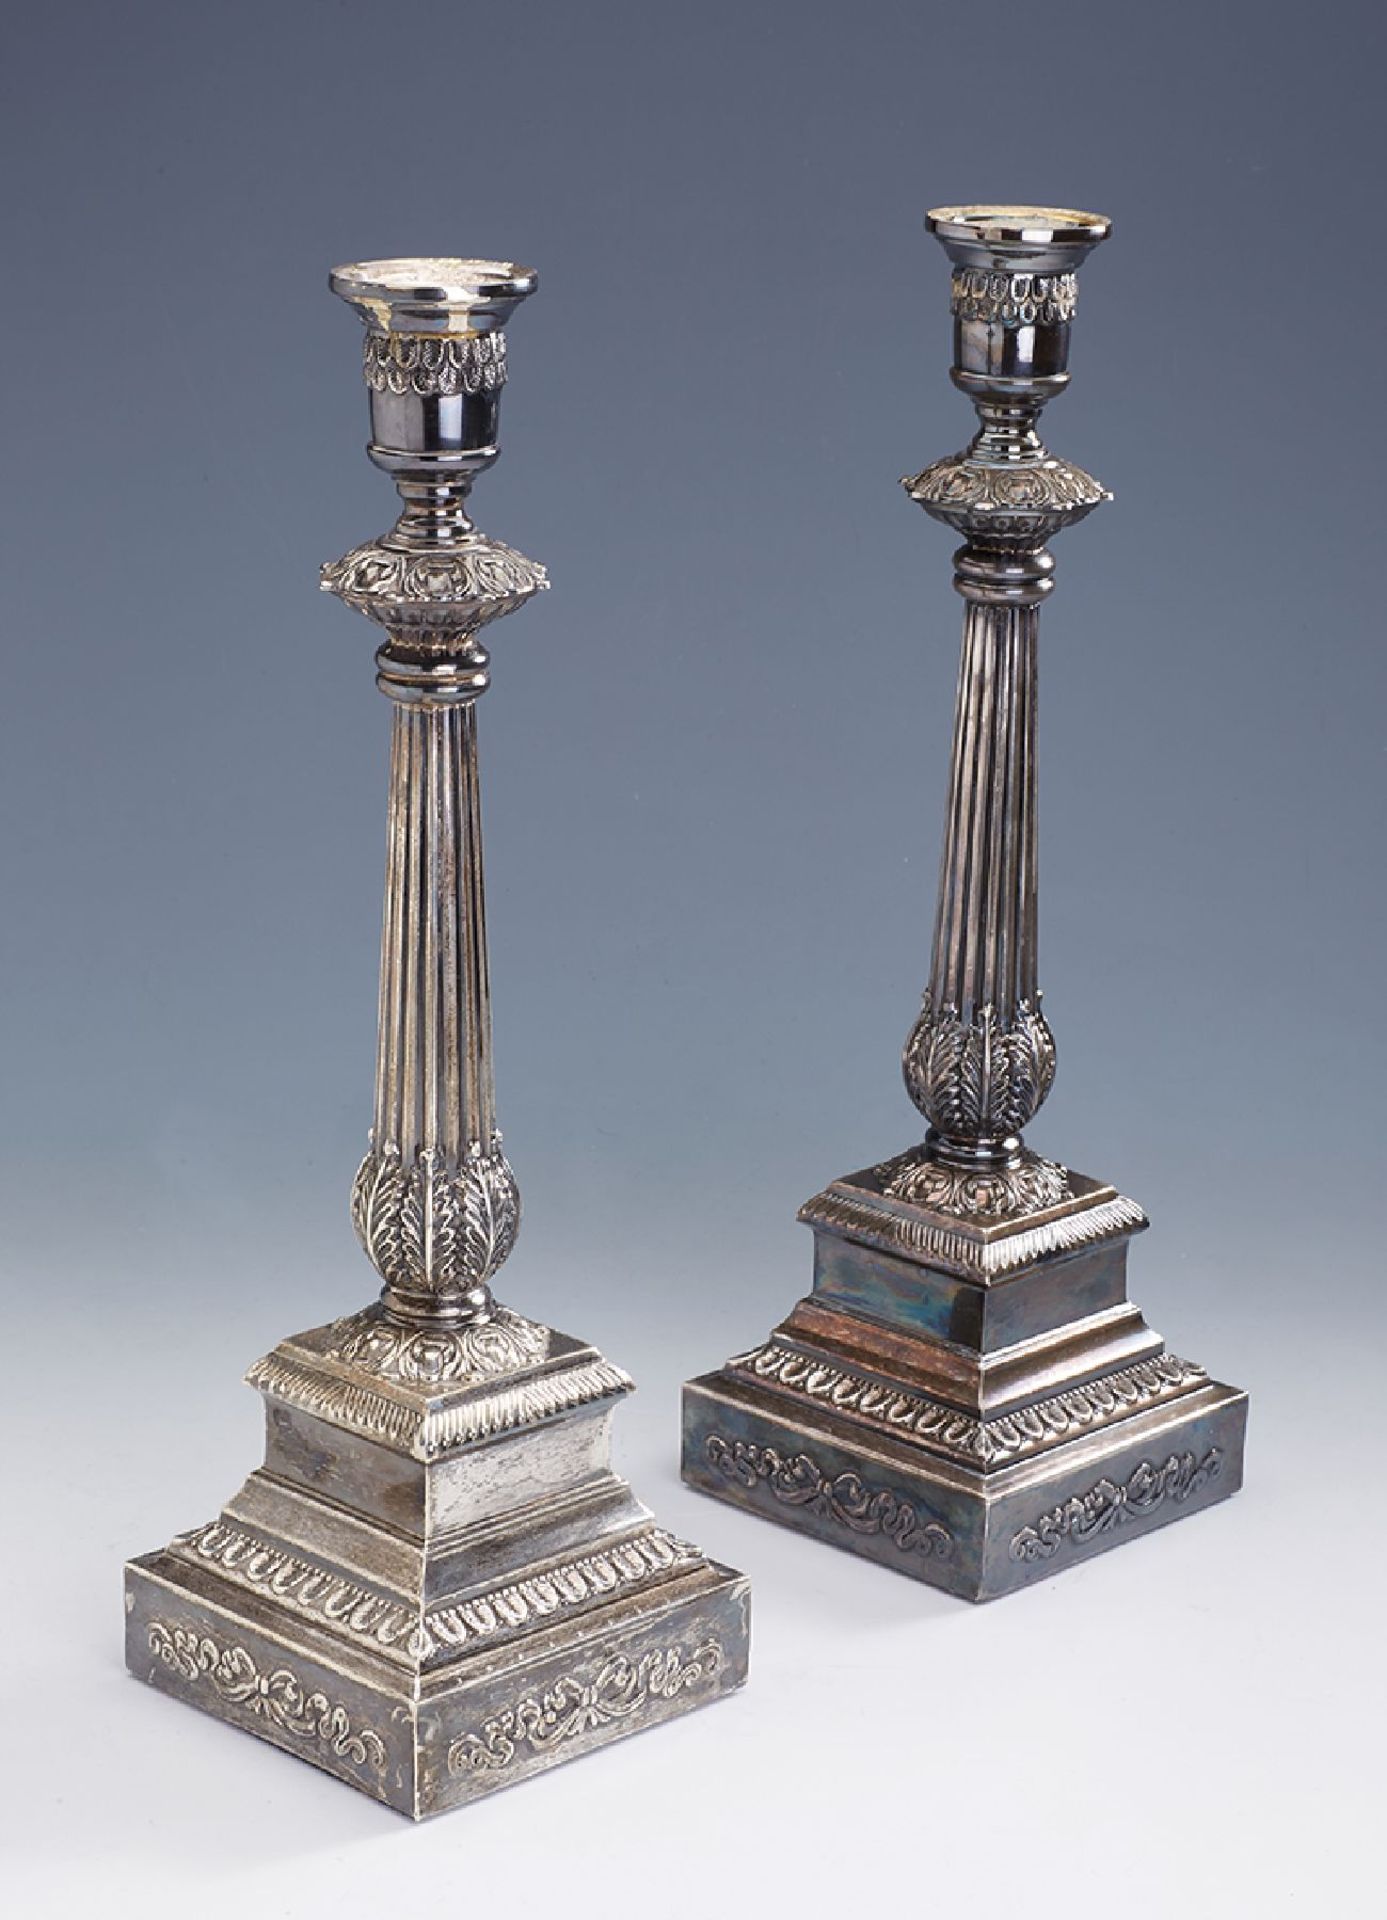 Kerzenleuchterpaar, Norwegen um 1910, 925er Silber, gefüllt, Klassizismus, Säulenform,